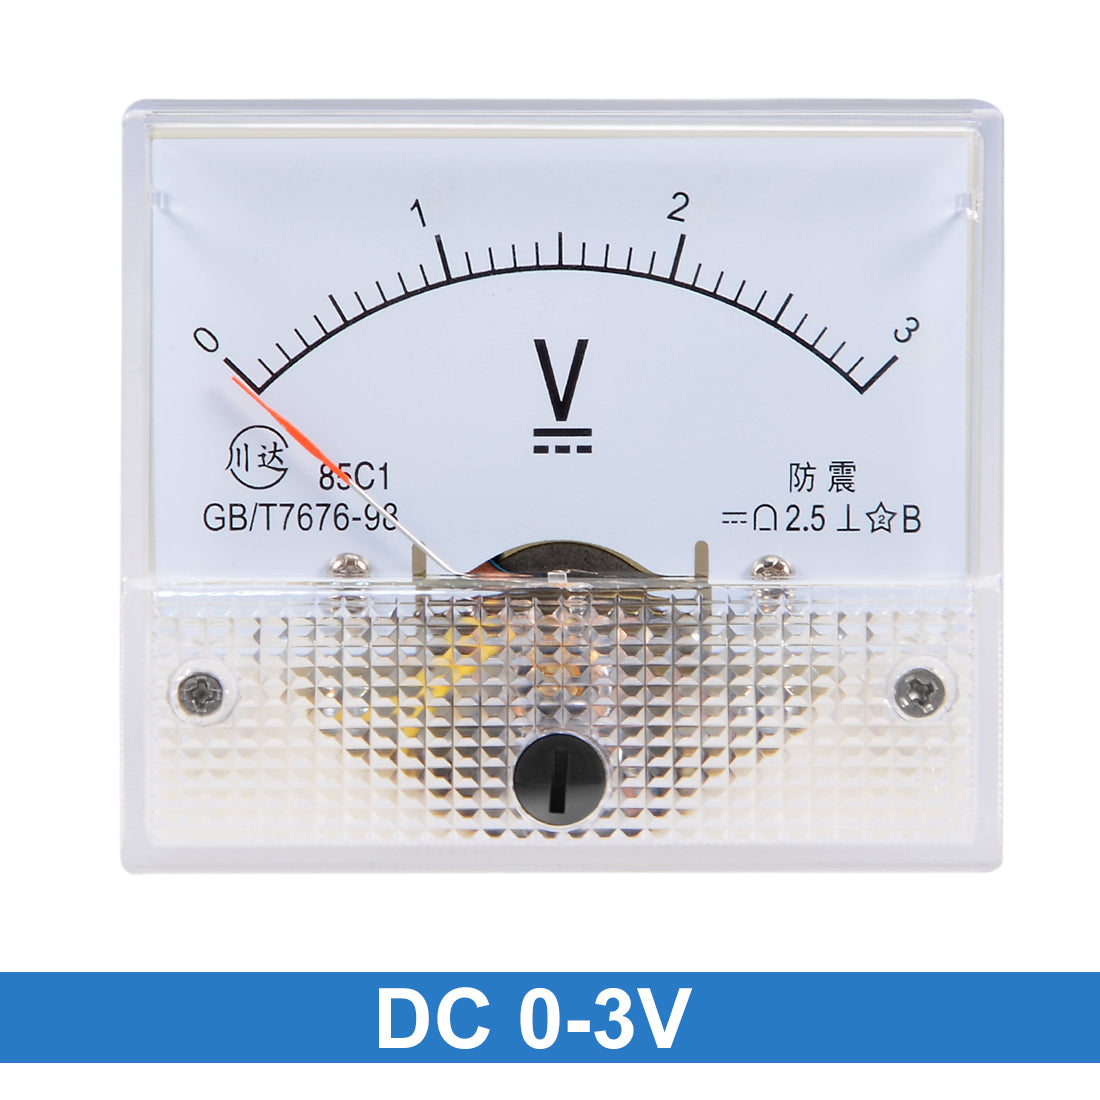 uxcell Uxcell DC 0-3V Analog Panel Voltage Gauge Volt Meter 85C1 2.5% Error Margin